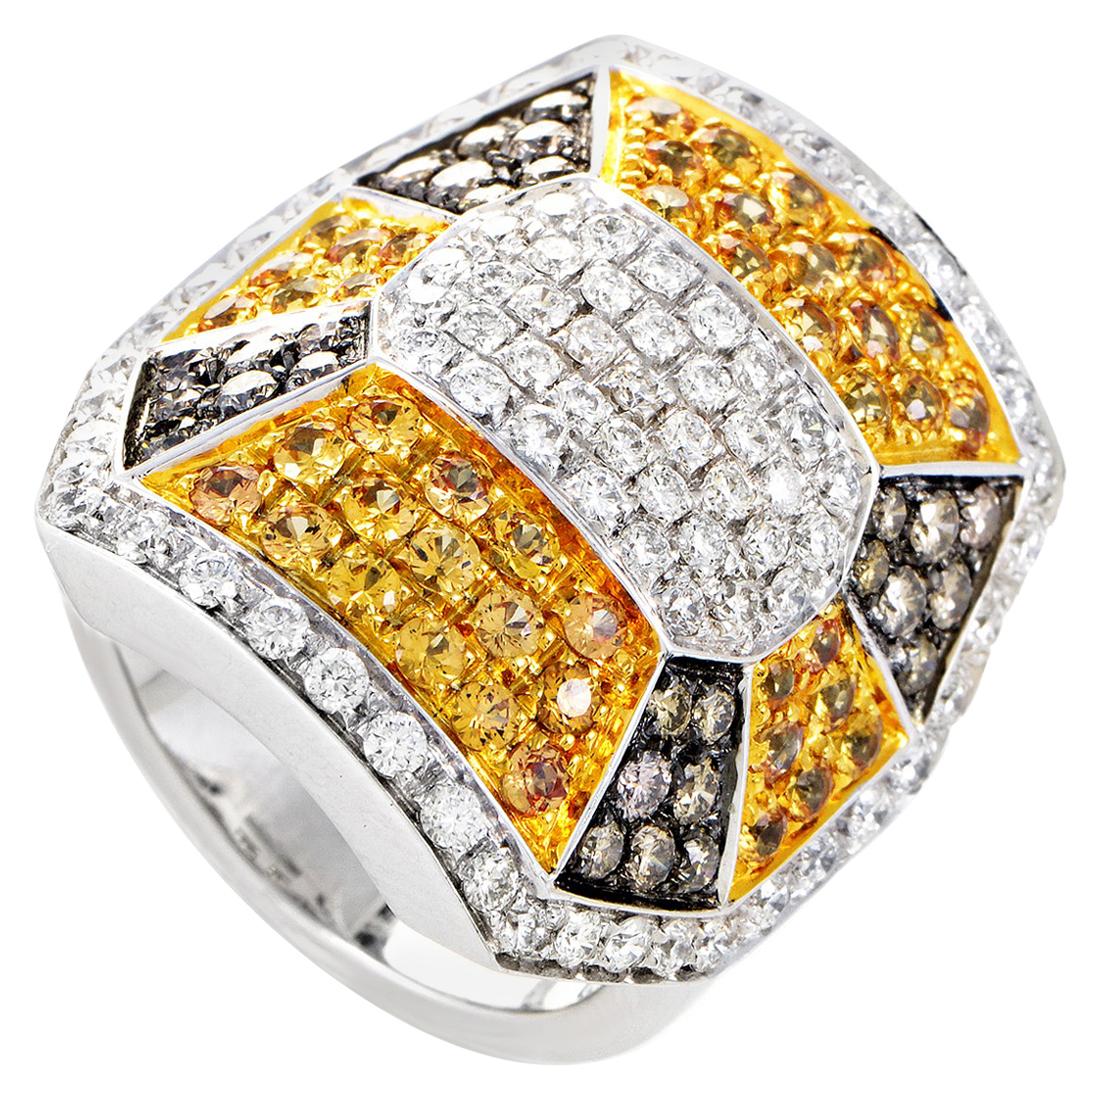 Oro Trend 18 Karat White Gold Diamond and Yellow Sapphire Ring